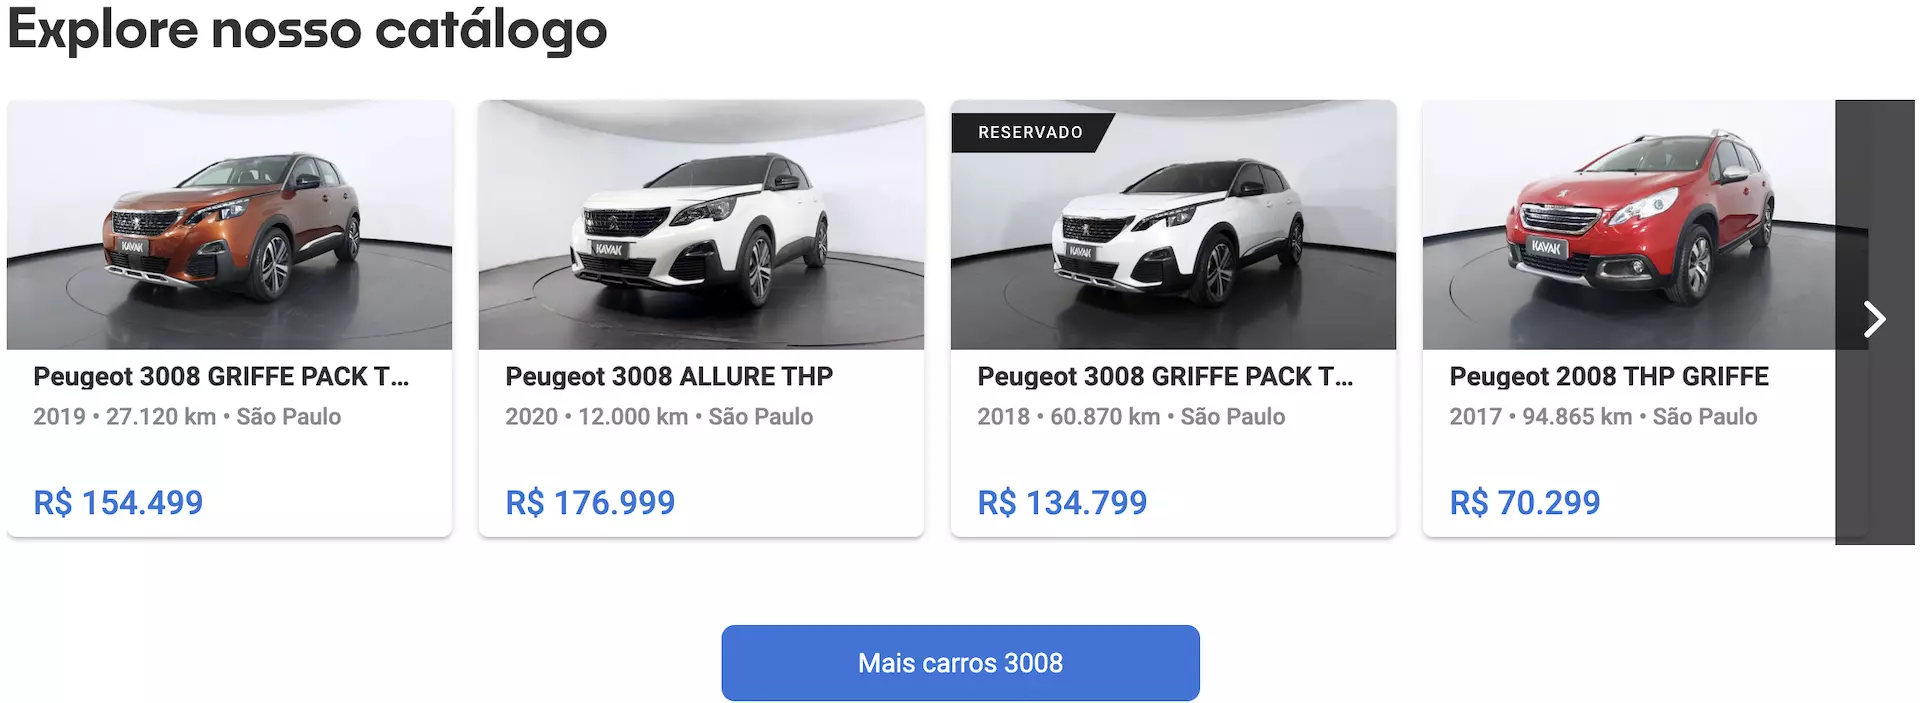 Peugeot 3008 preço